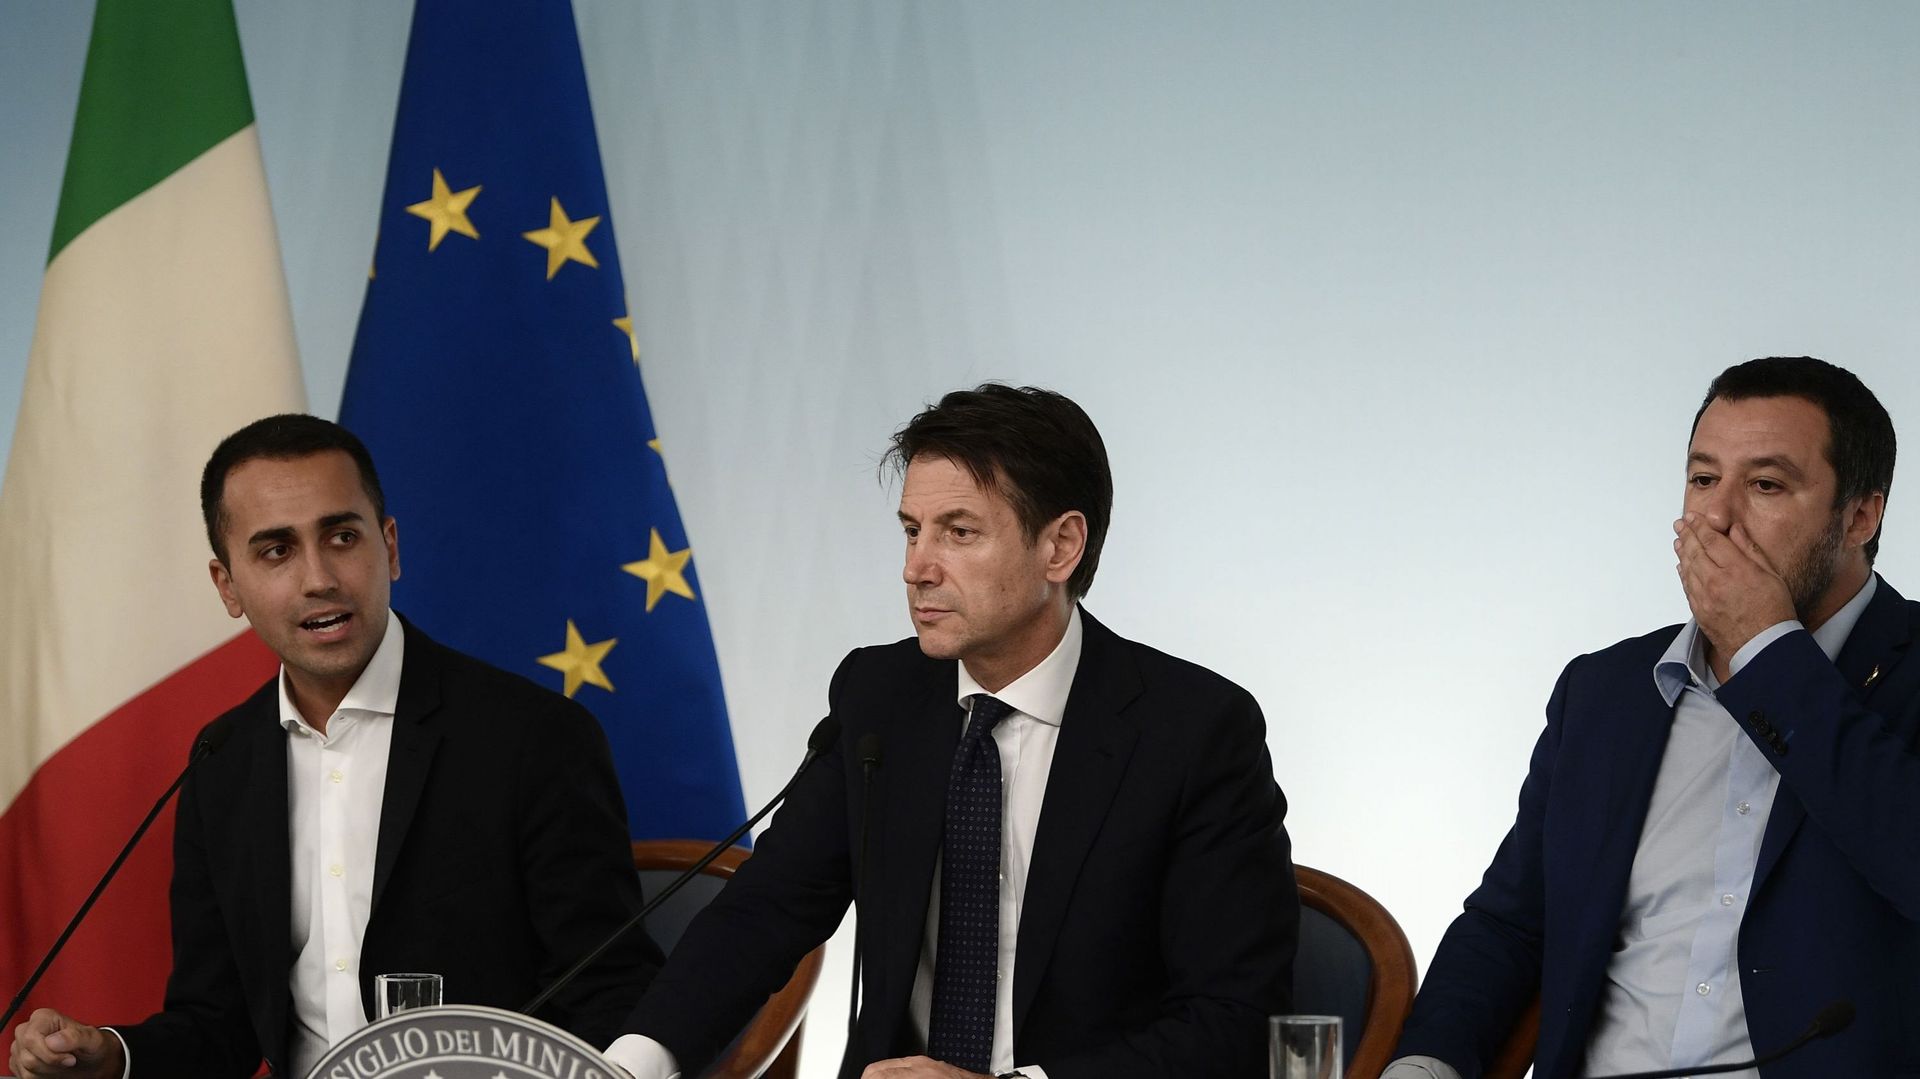 Le gouvernement italien maintient son budget et son engagement vis-à-vis de l'euro